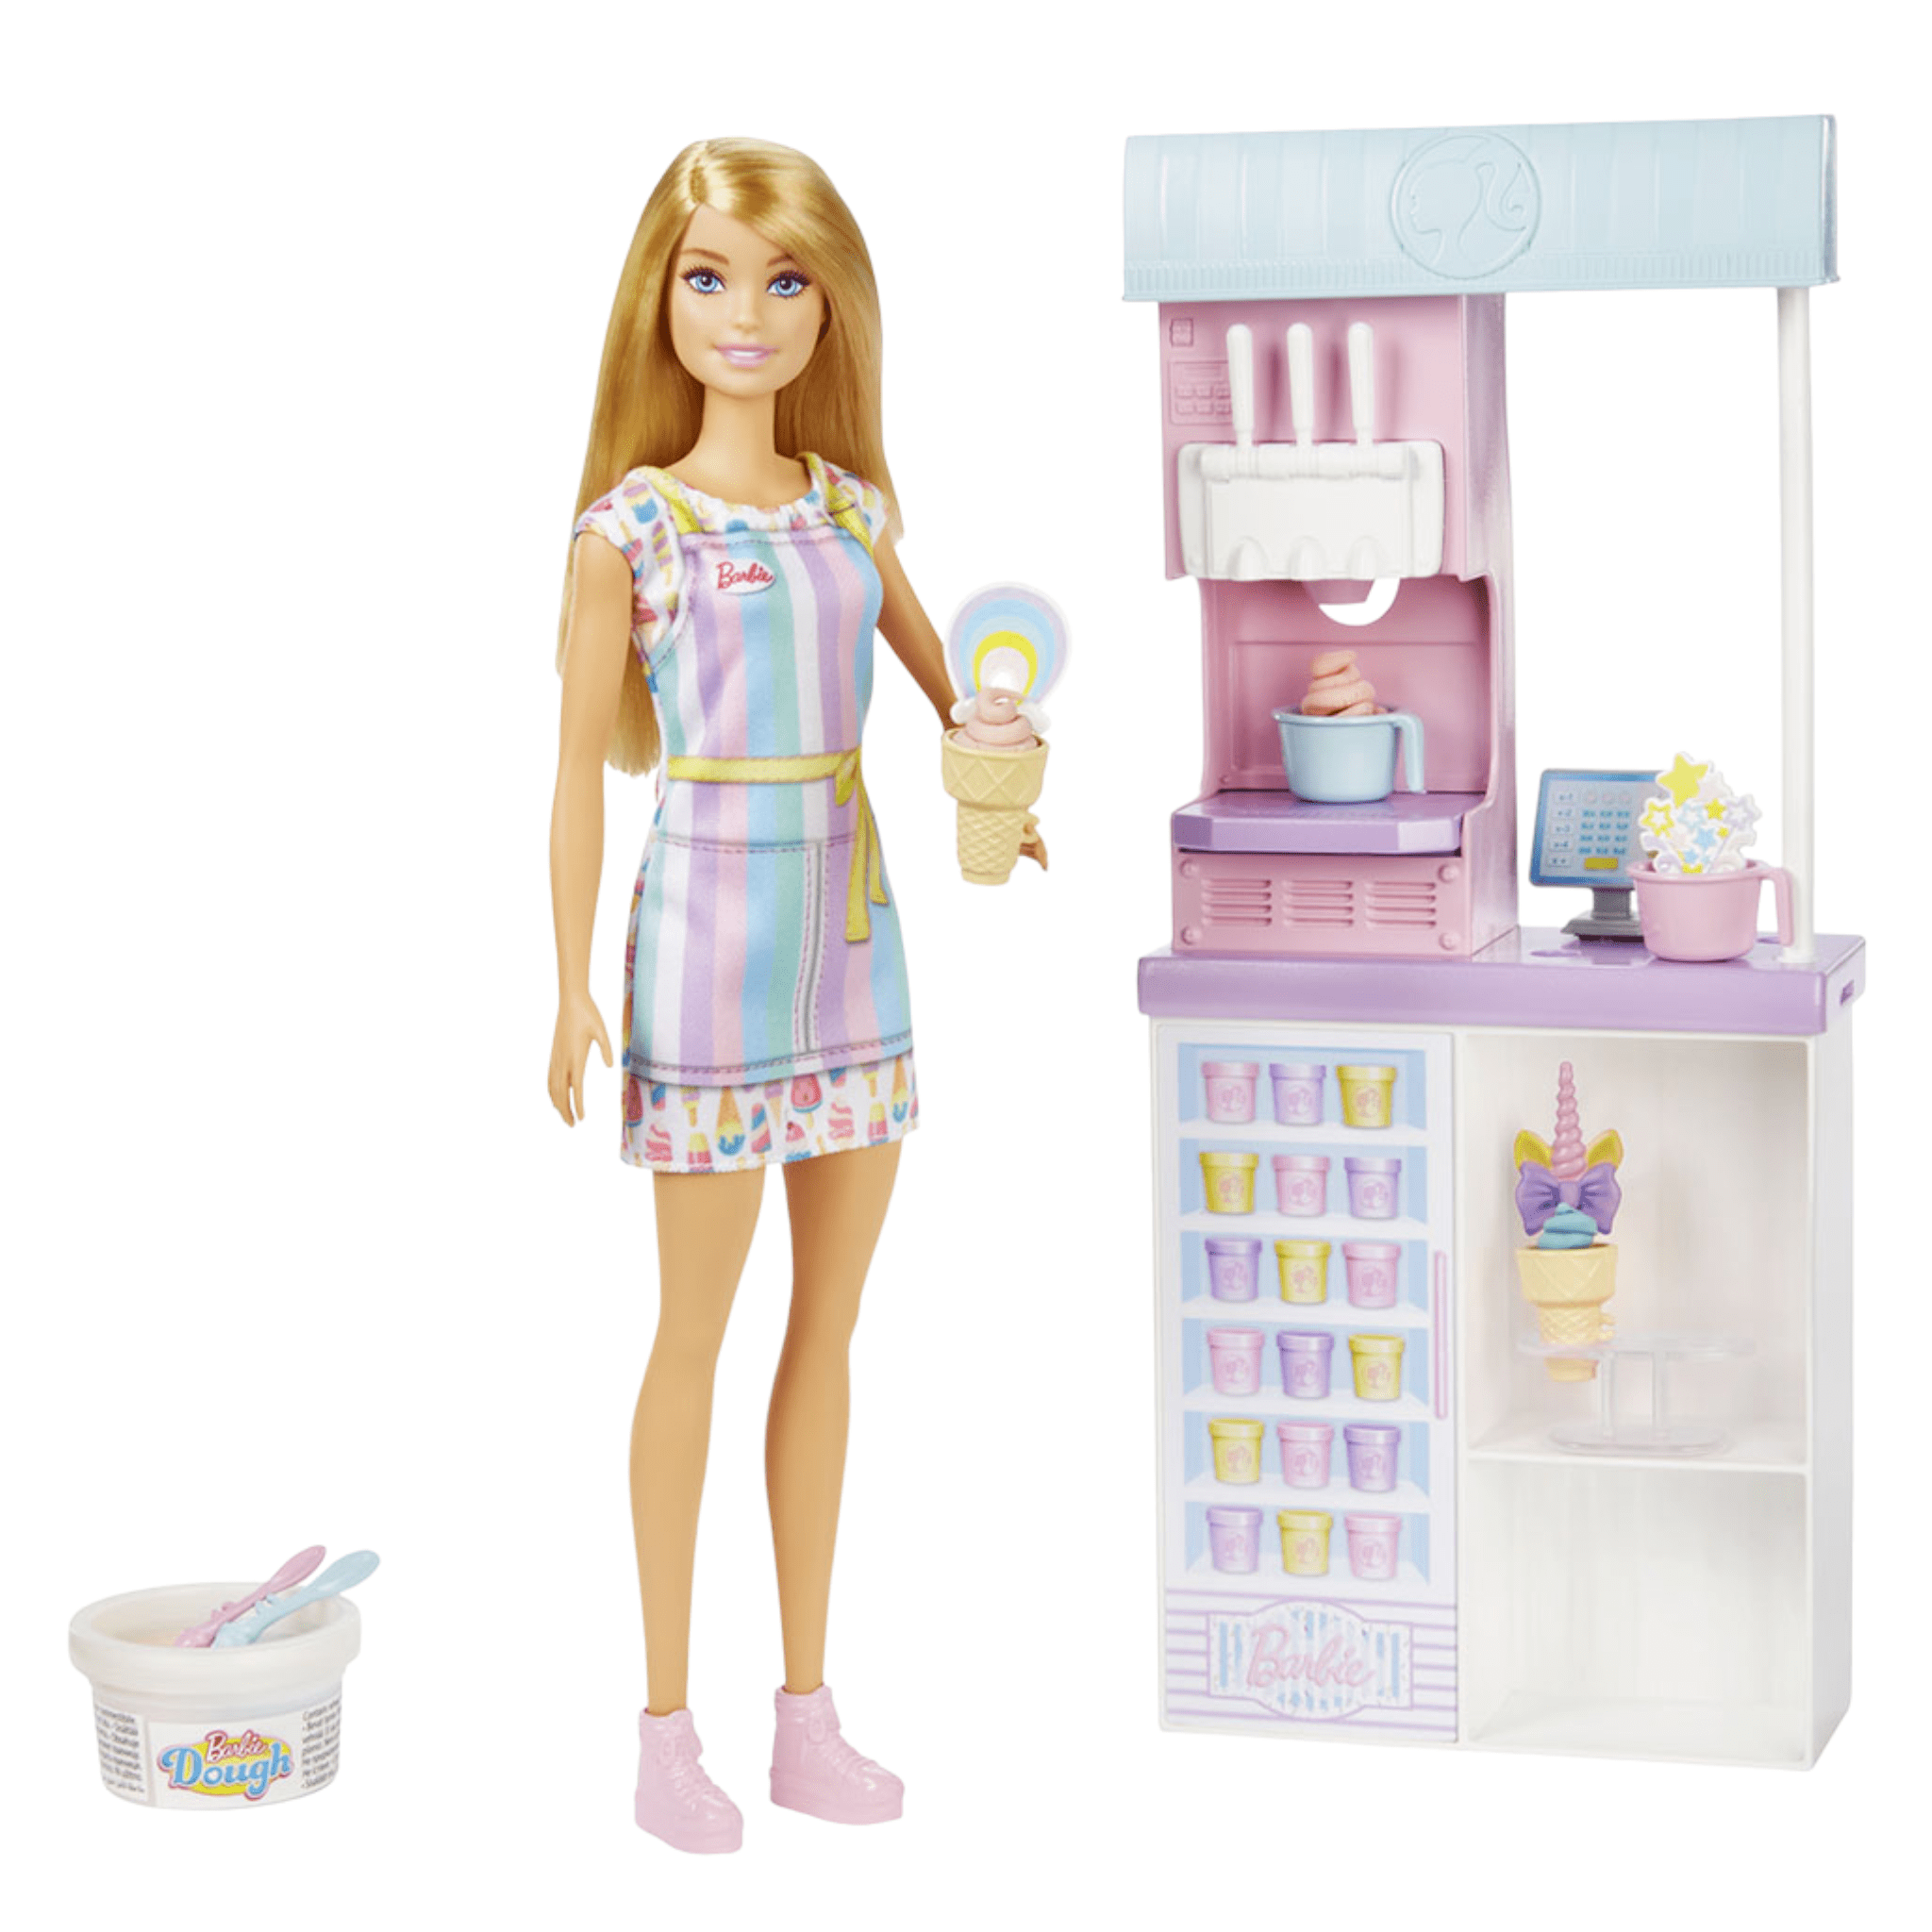 Набор игровой Barbie Ice Cream Shopkeeper Playset игровой набор barbie челси магазин кафе ghv76